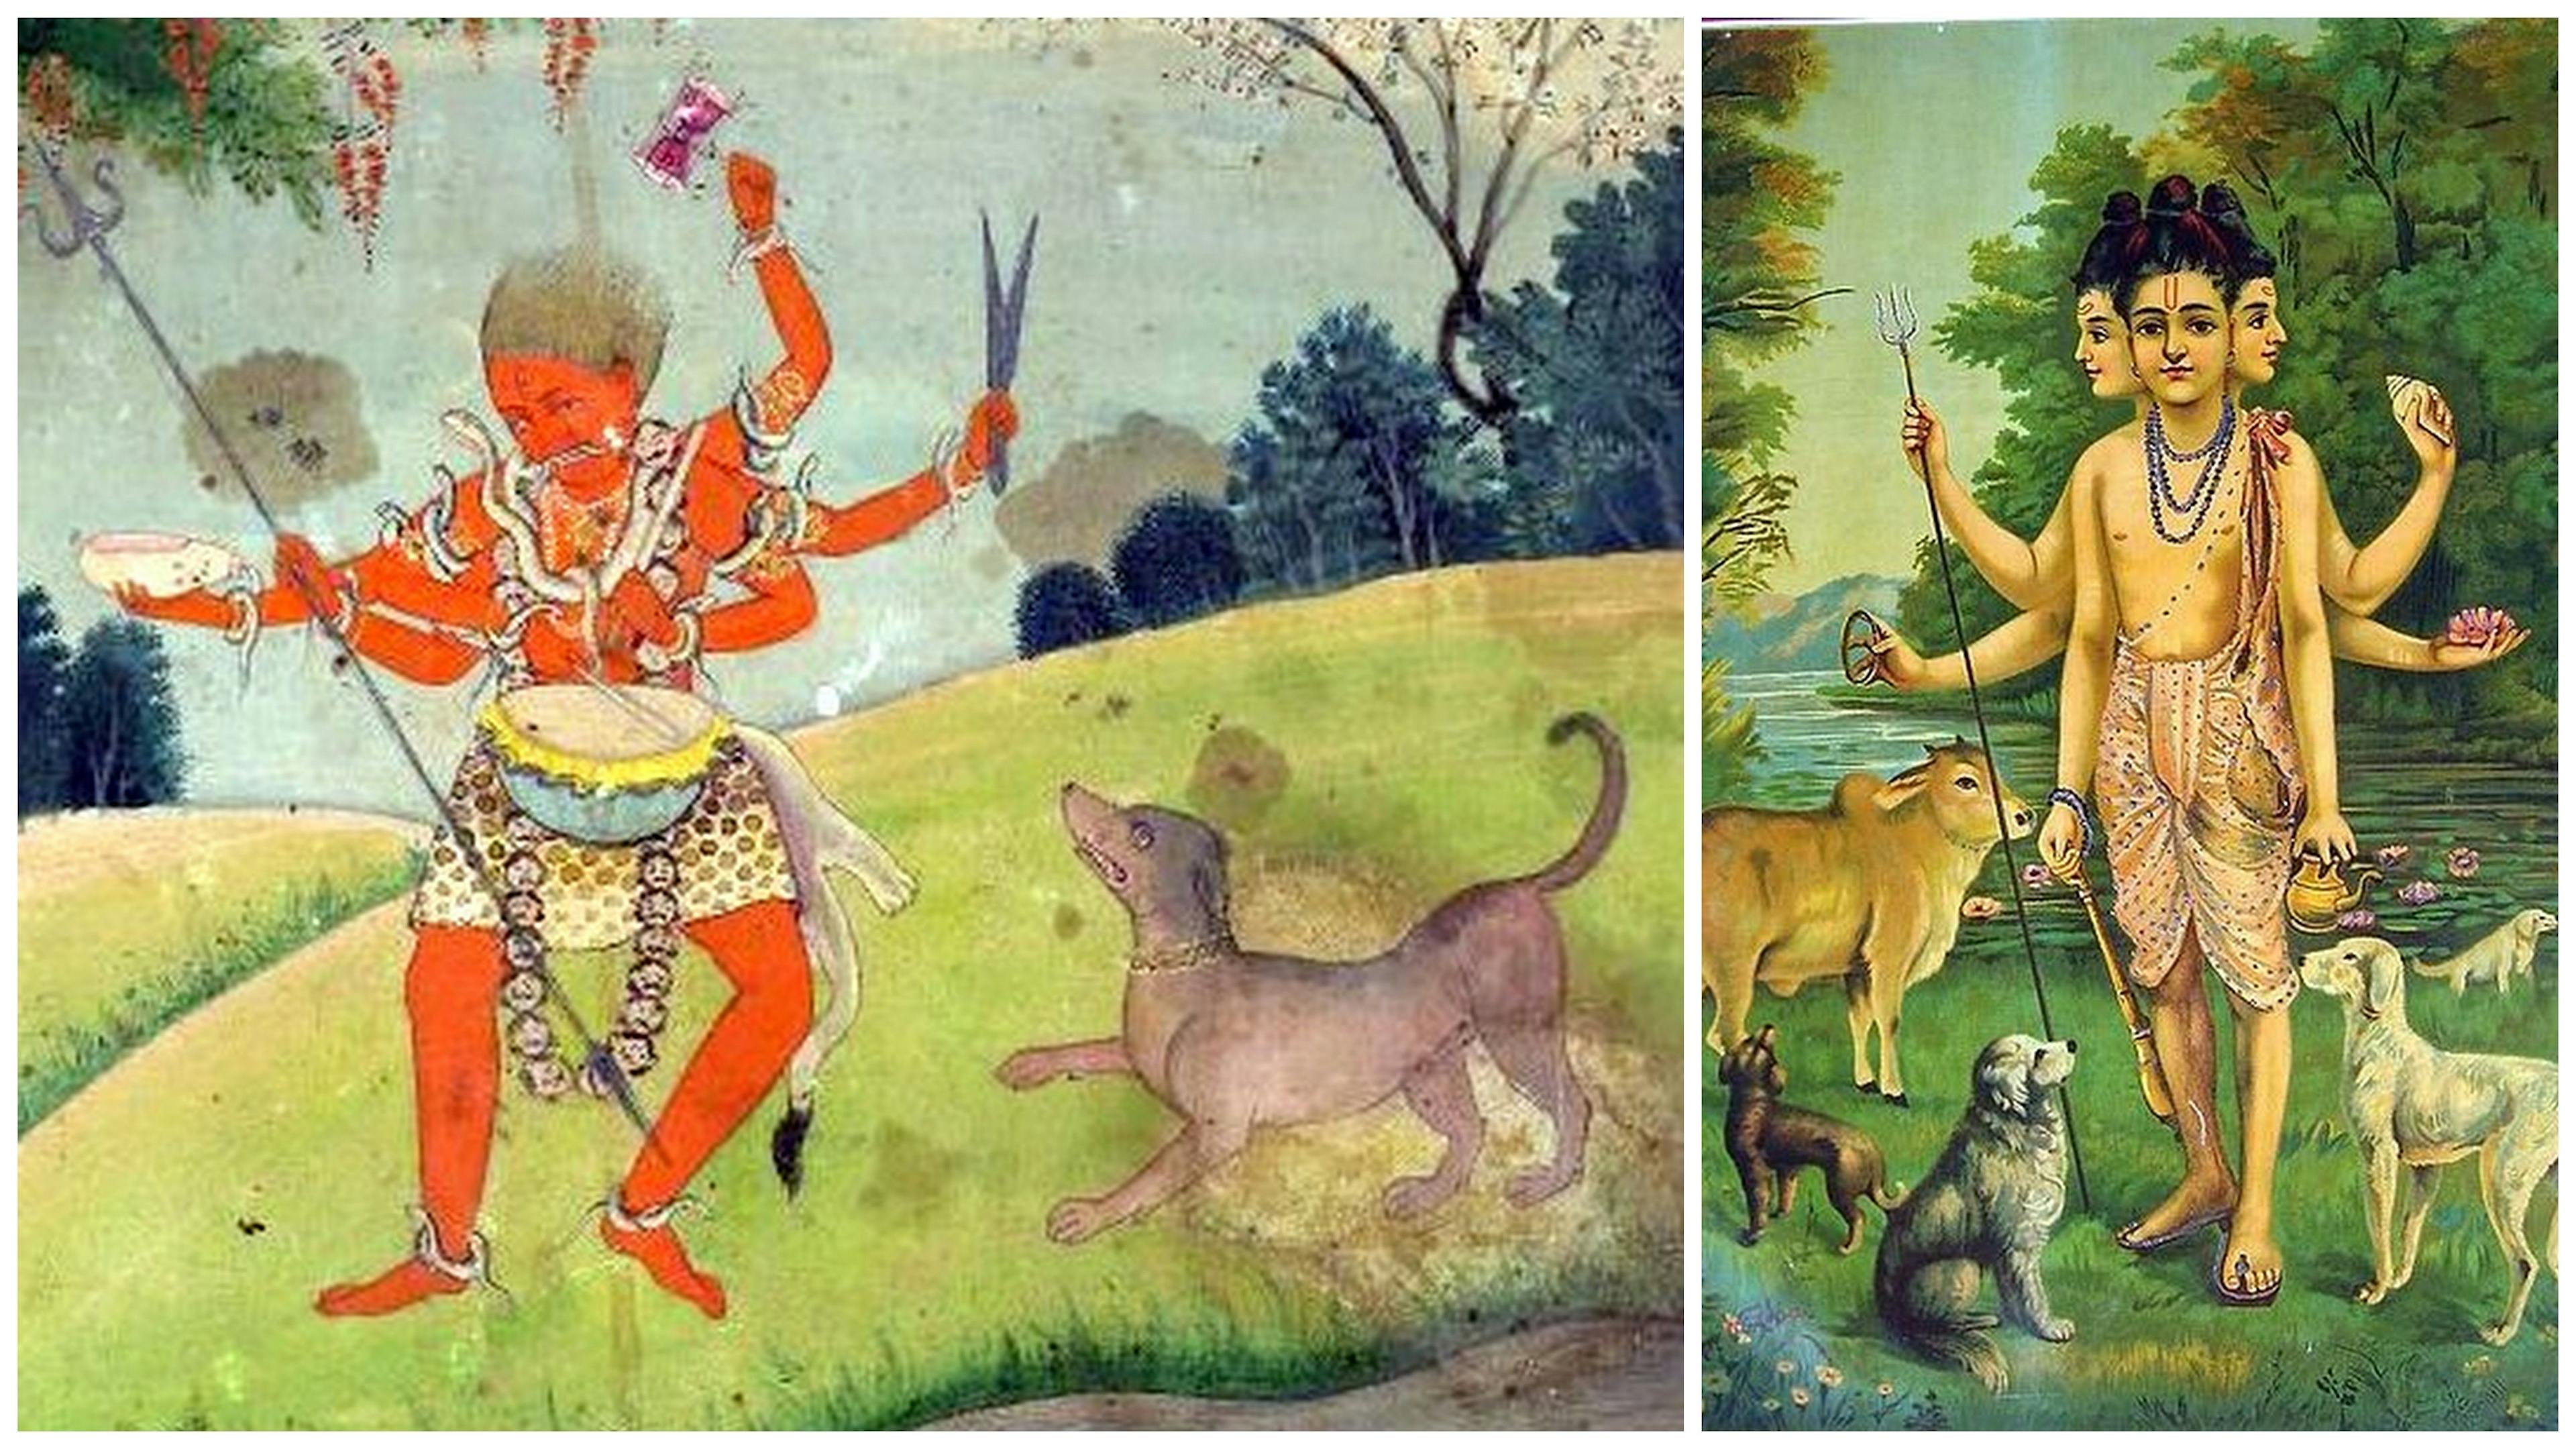 Bhairava, the incarnation of Shiva and Lord Dattatreya